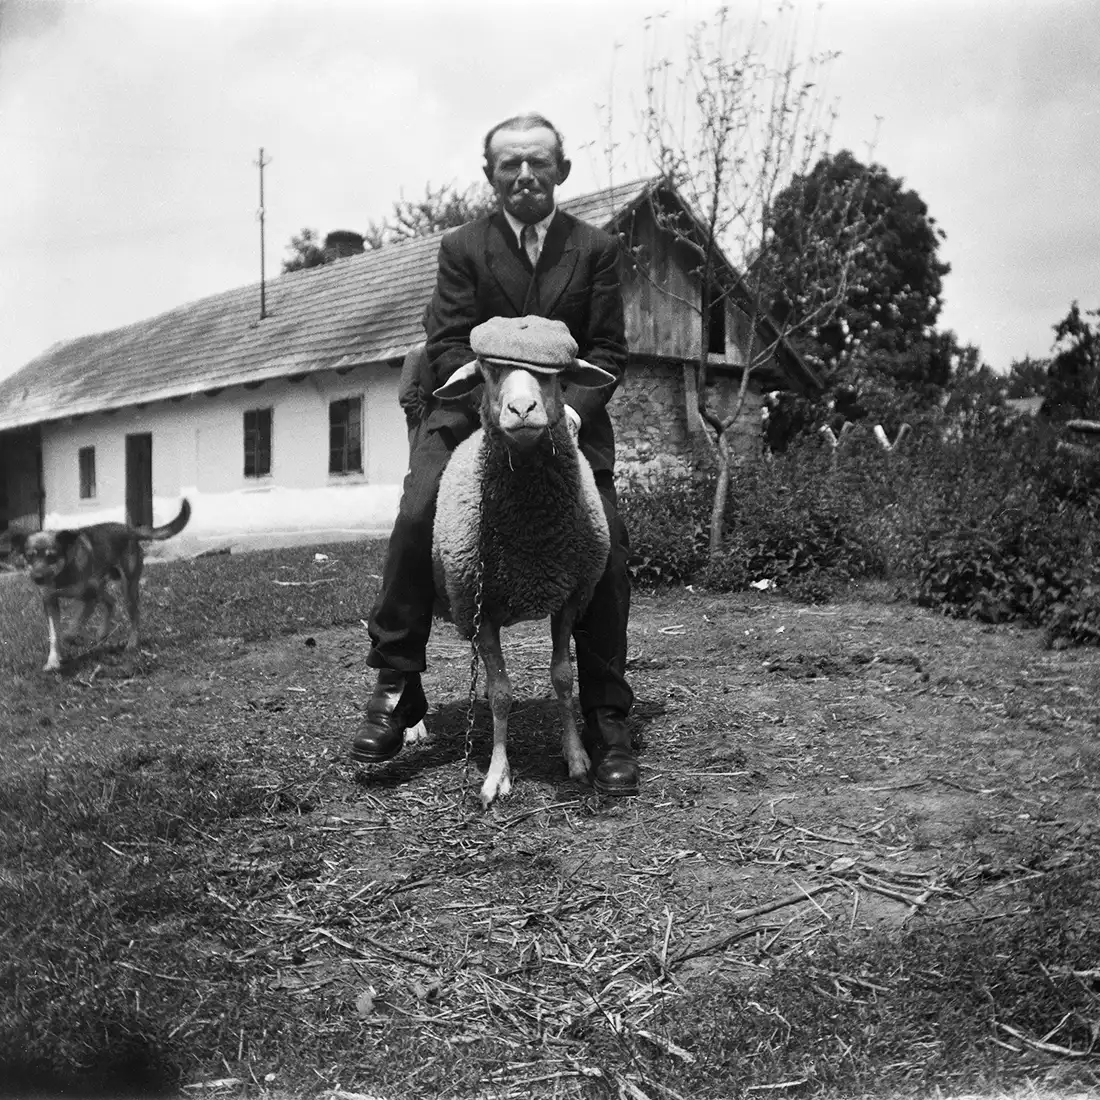 mężczyzna w garniturze siedzący na owcy z nałożonym kaszkietem na głowę, w tle stodoła i przechodzący pies